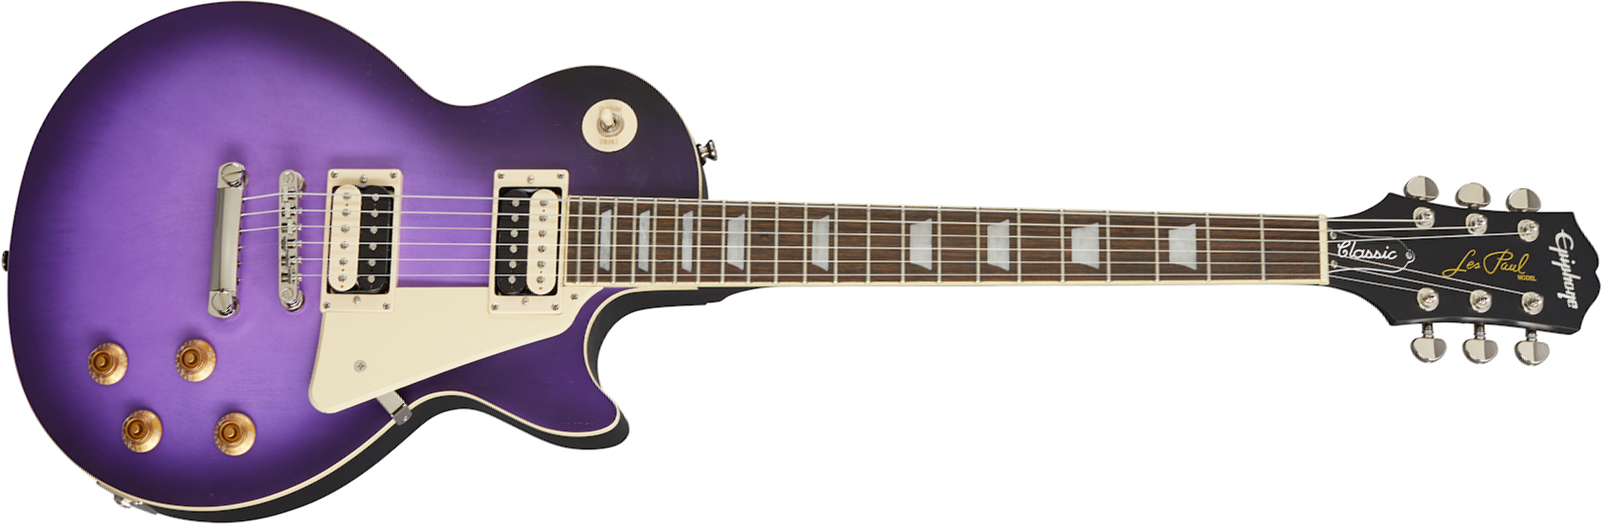 Epiphone Les Paul Classic 2h Ht Rw - Worn Purple - Enkel gesneden elektrische gitaar - Main picture